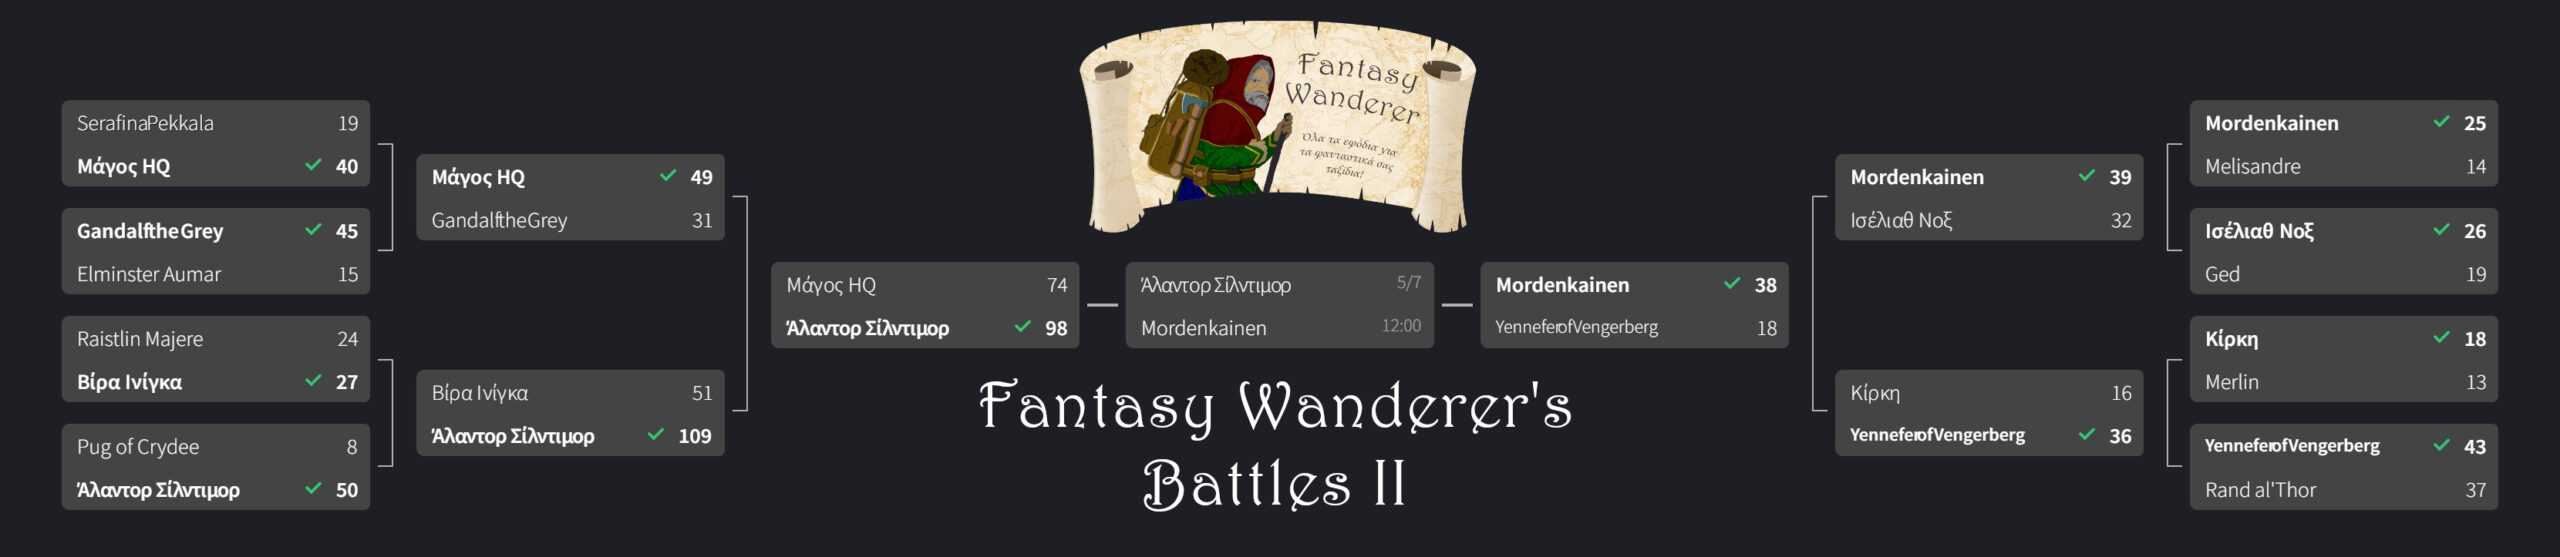 Fantasy Wanderer's battle II